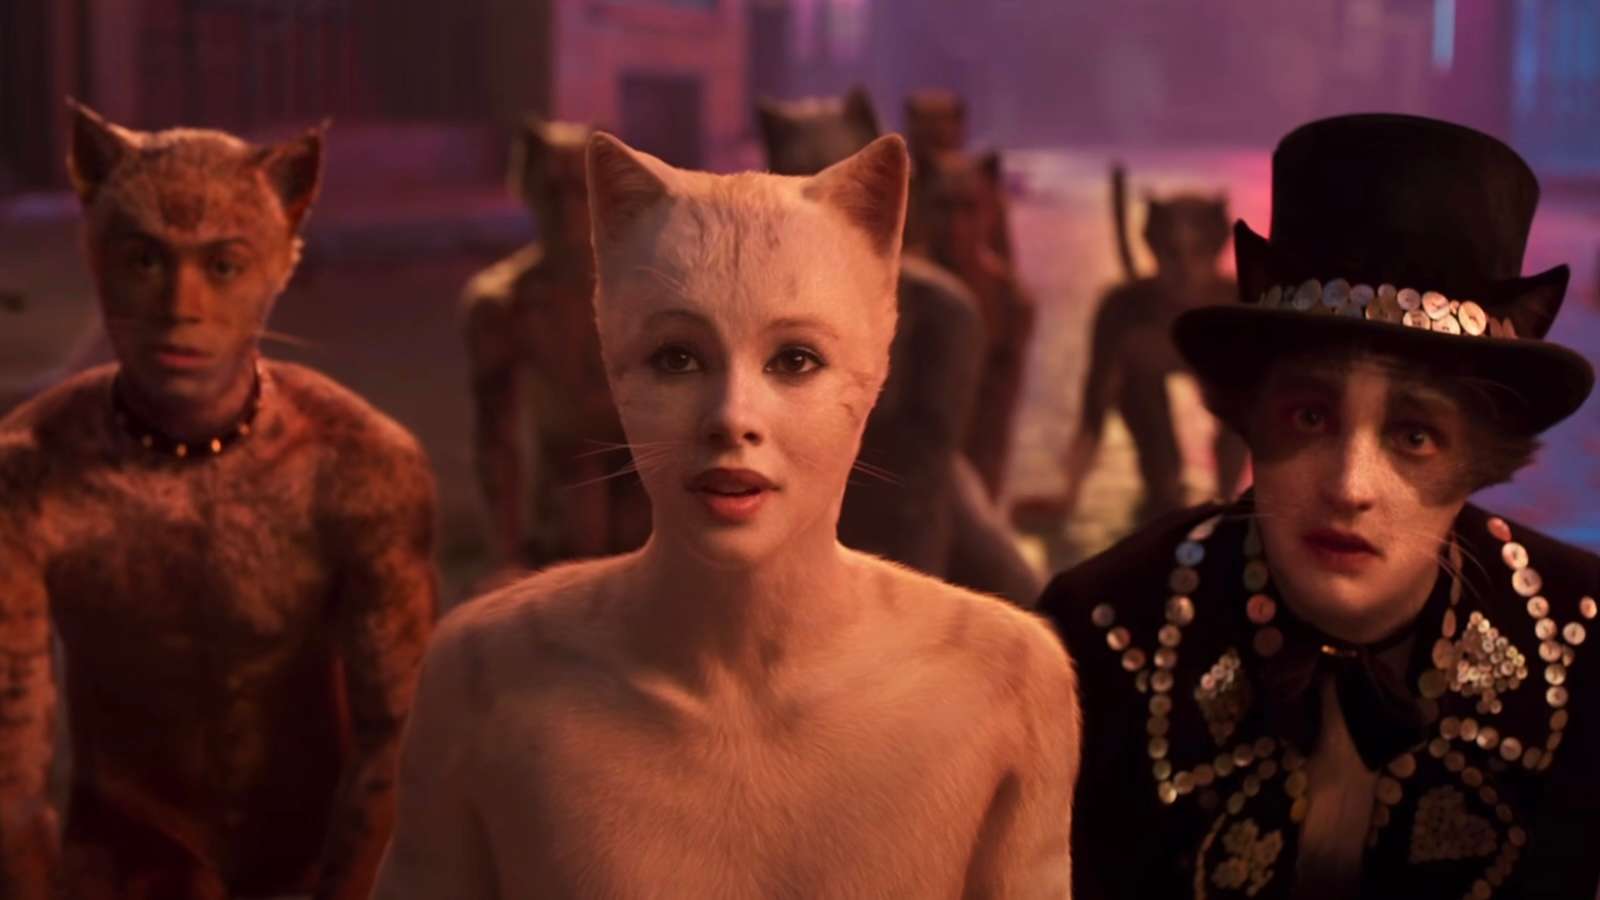 Still from 2019 movie Cats